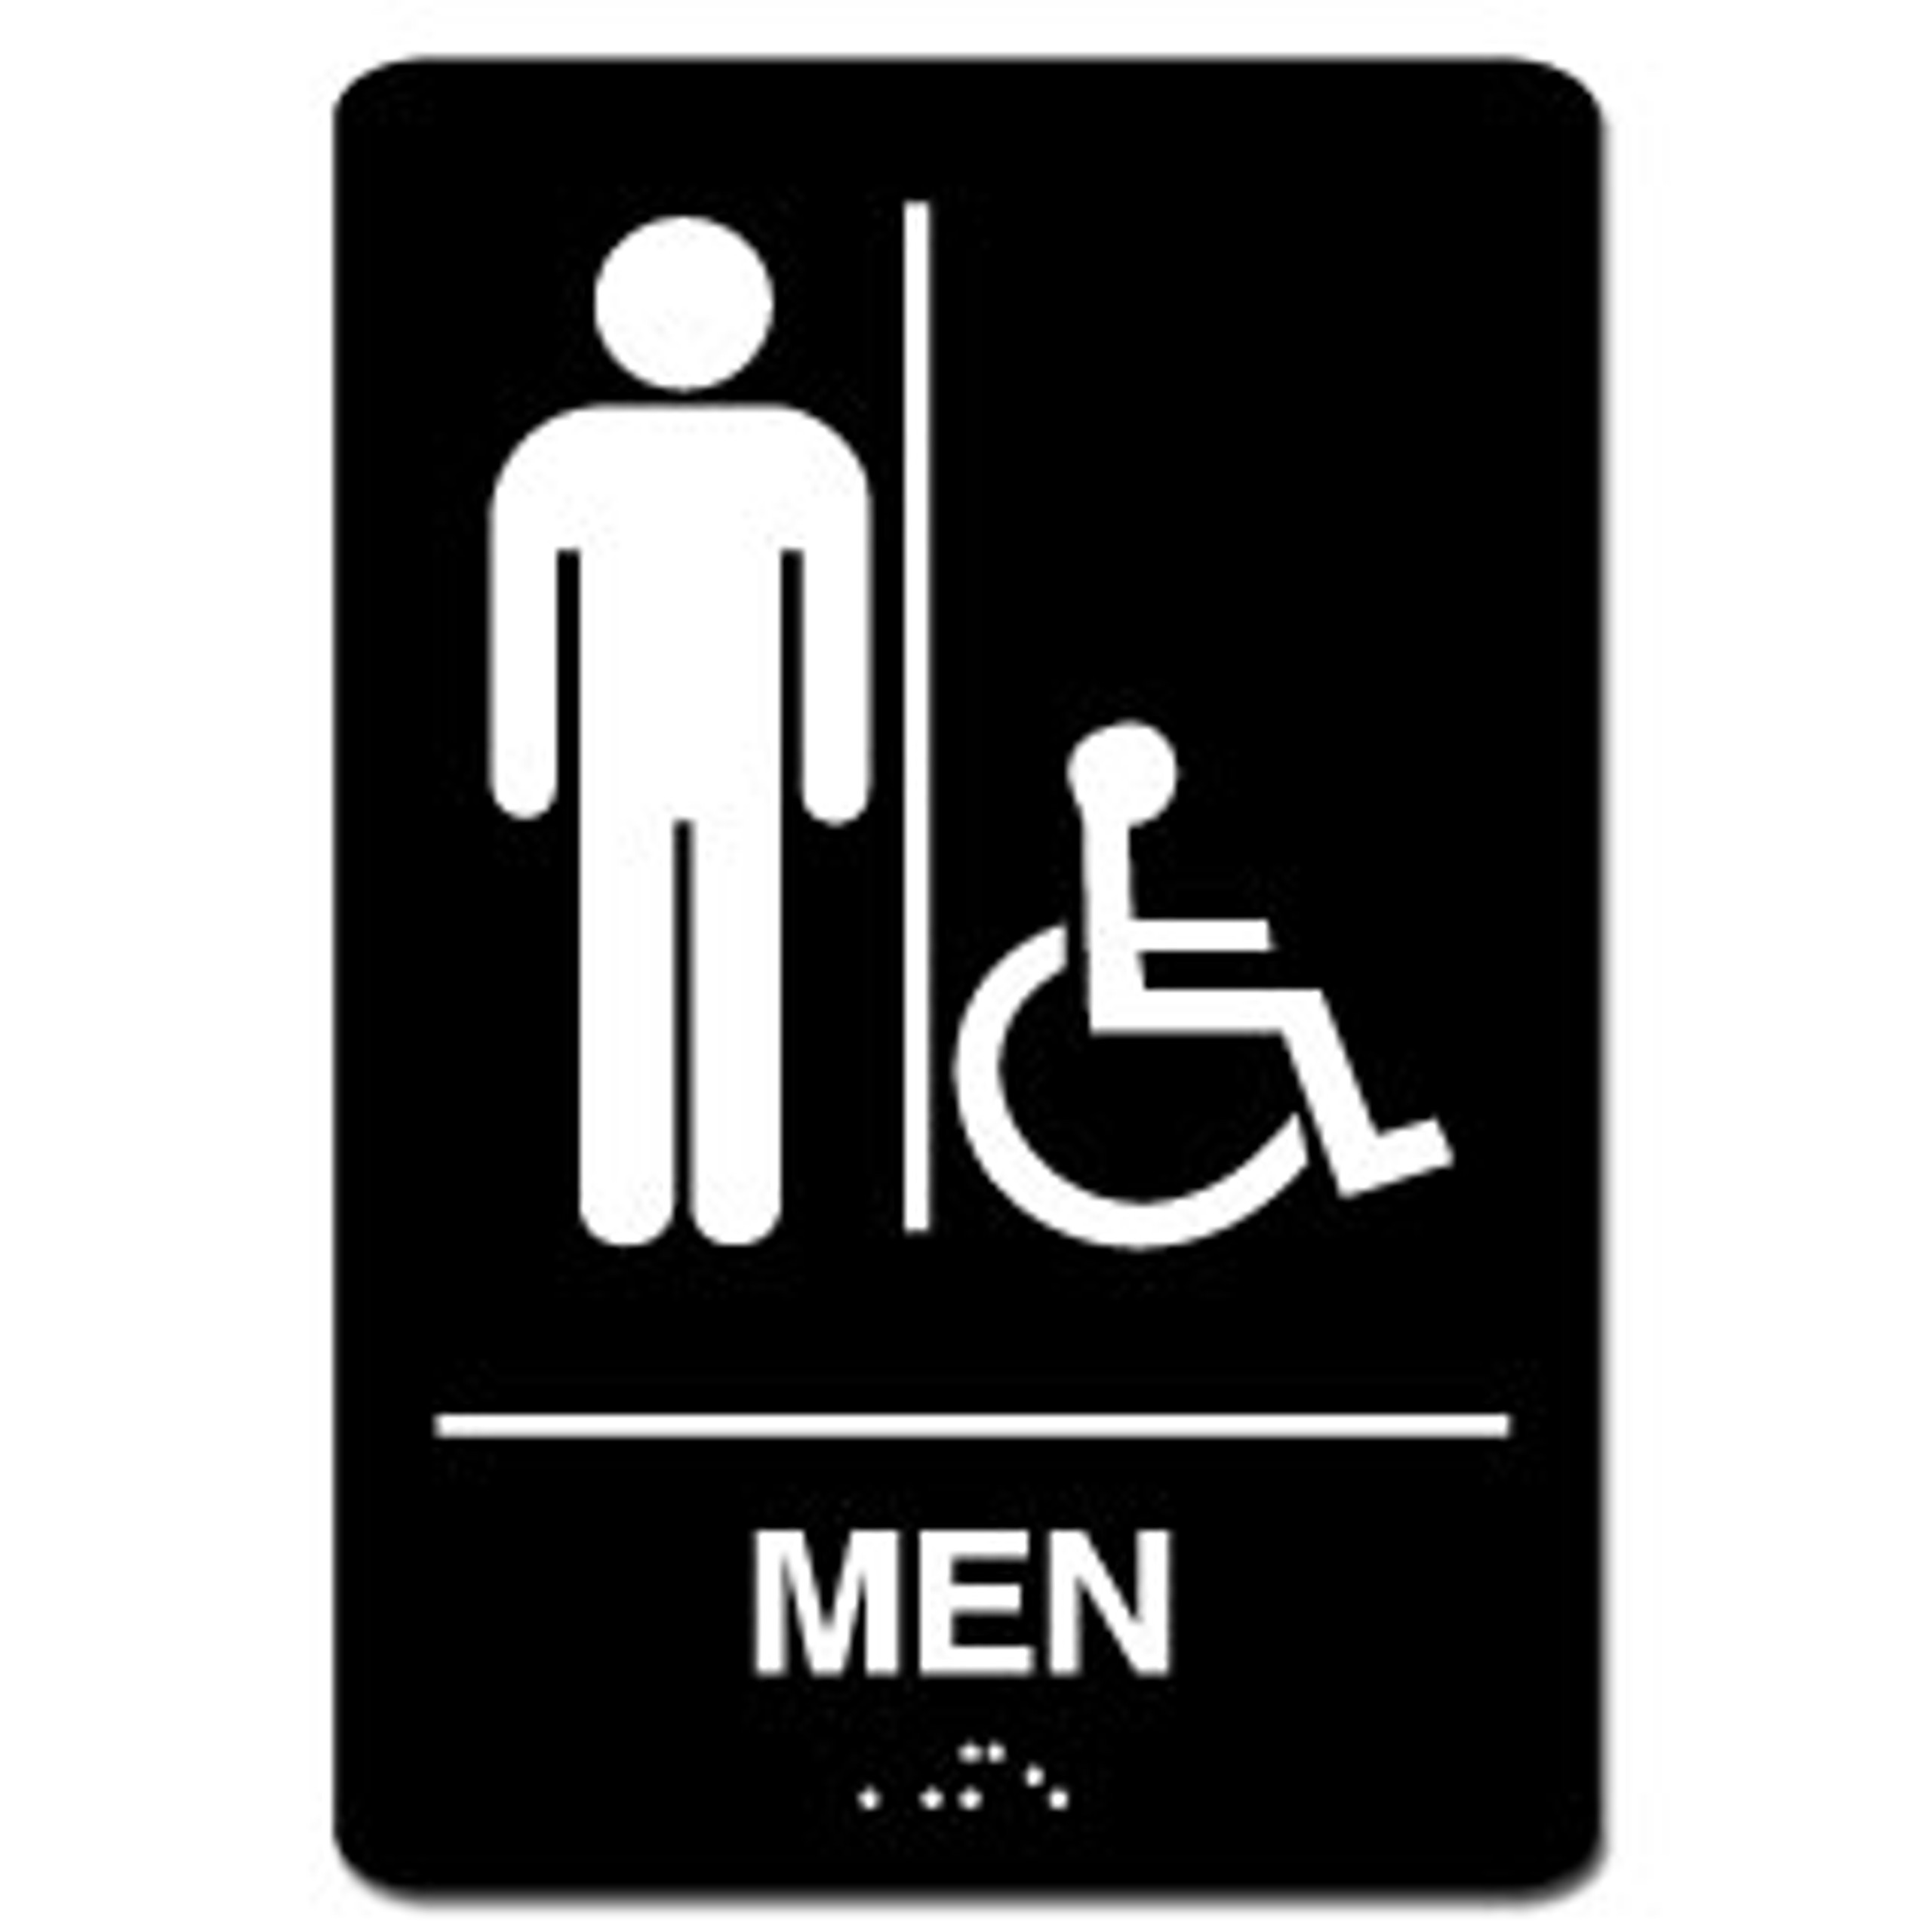 Mens Handicap Ada Restroom Sign Signquick 